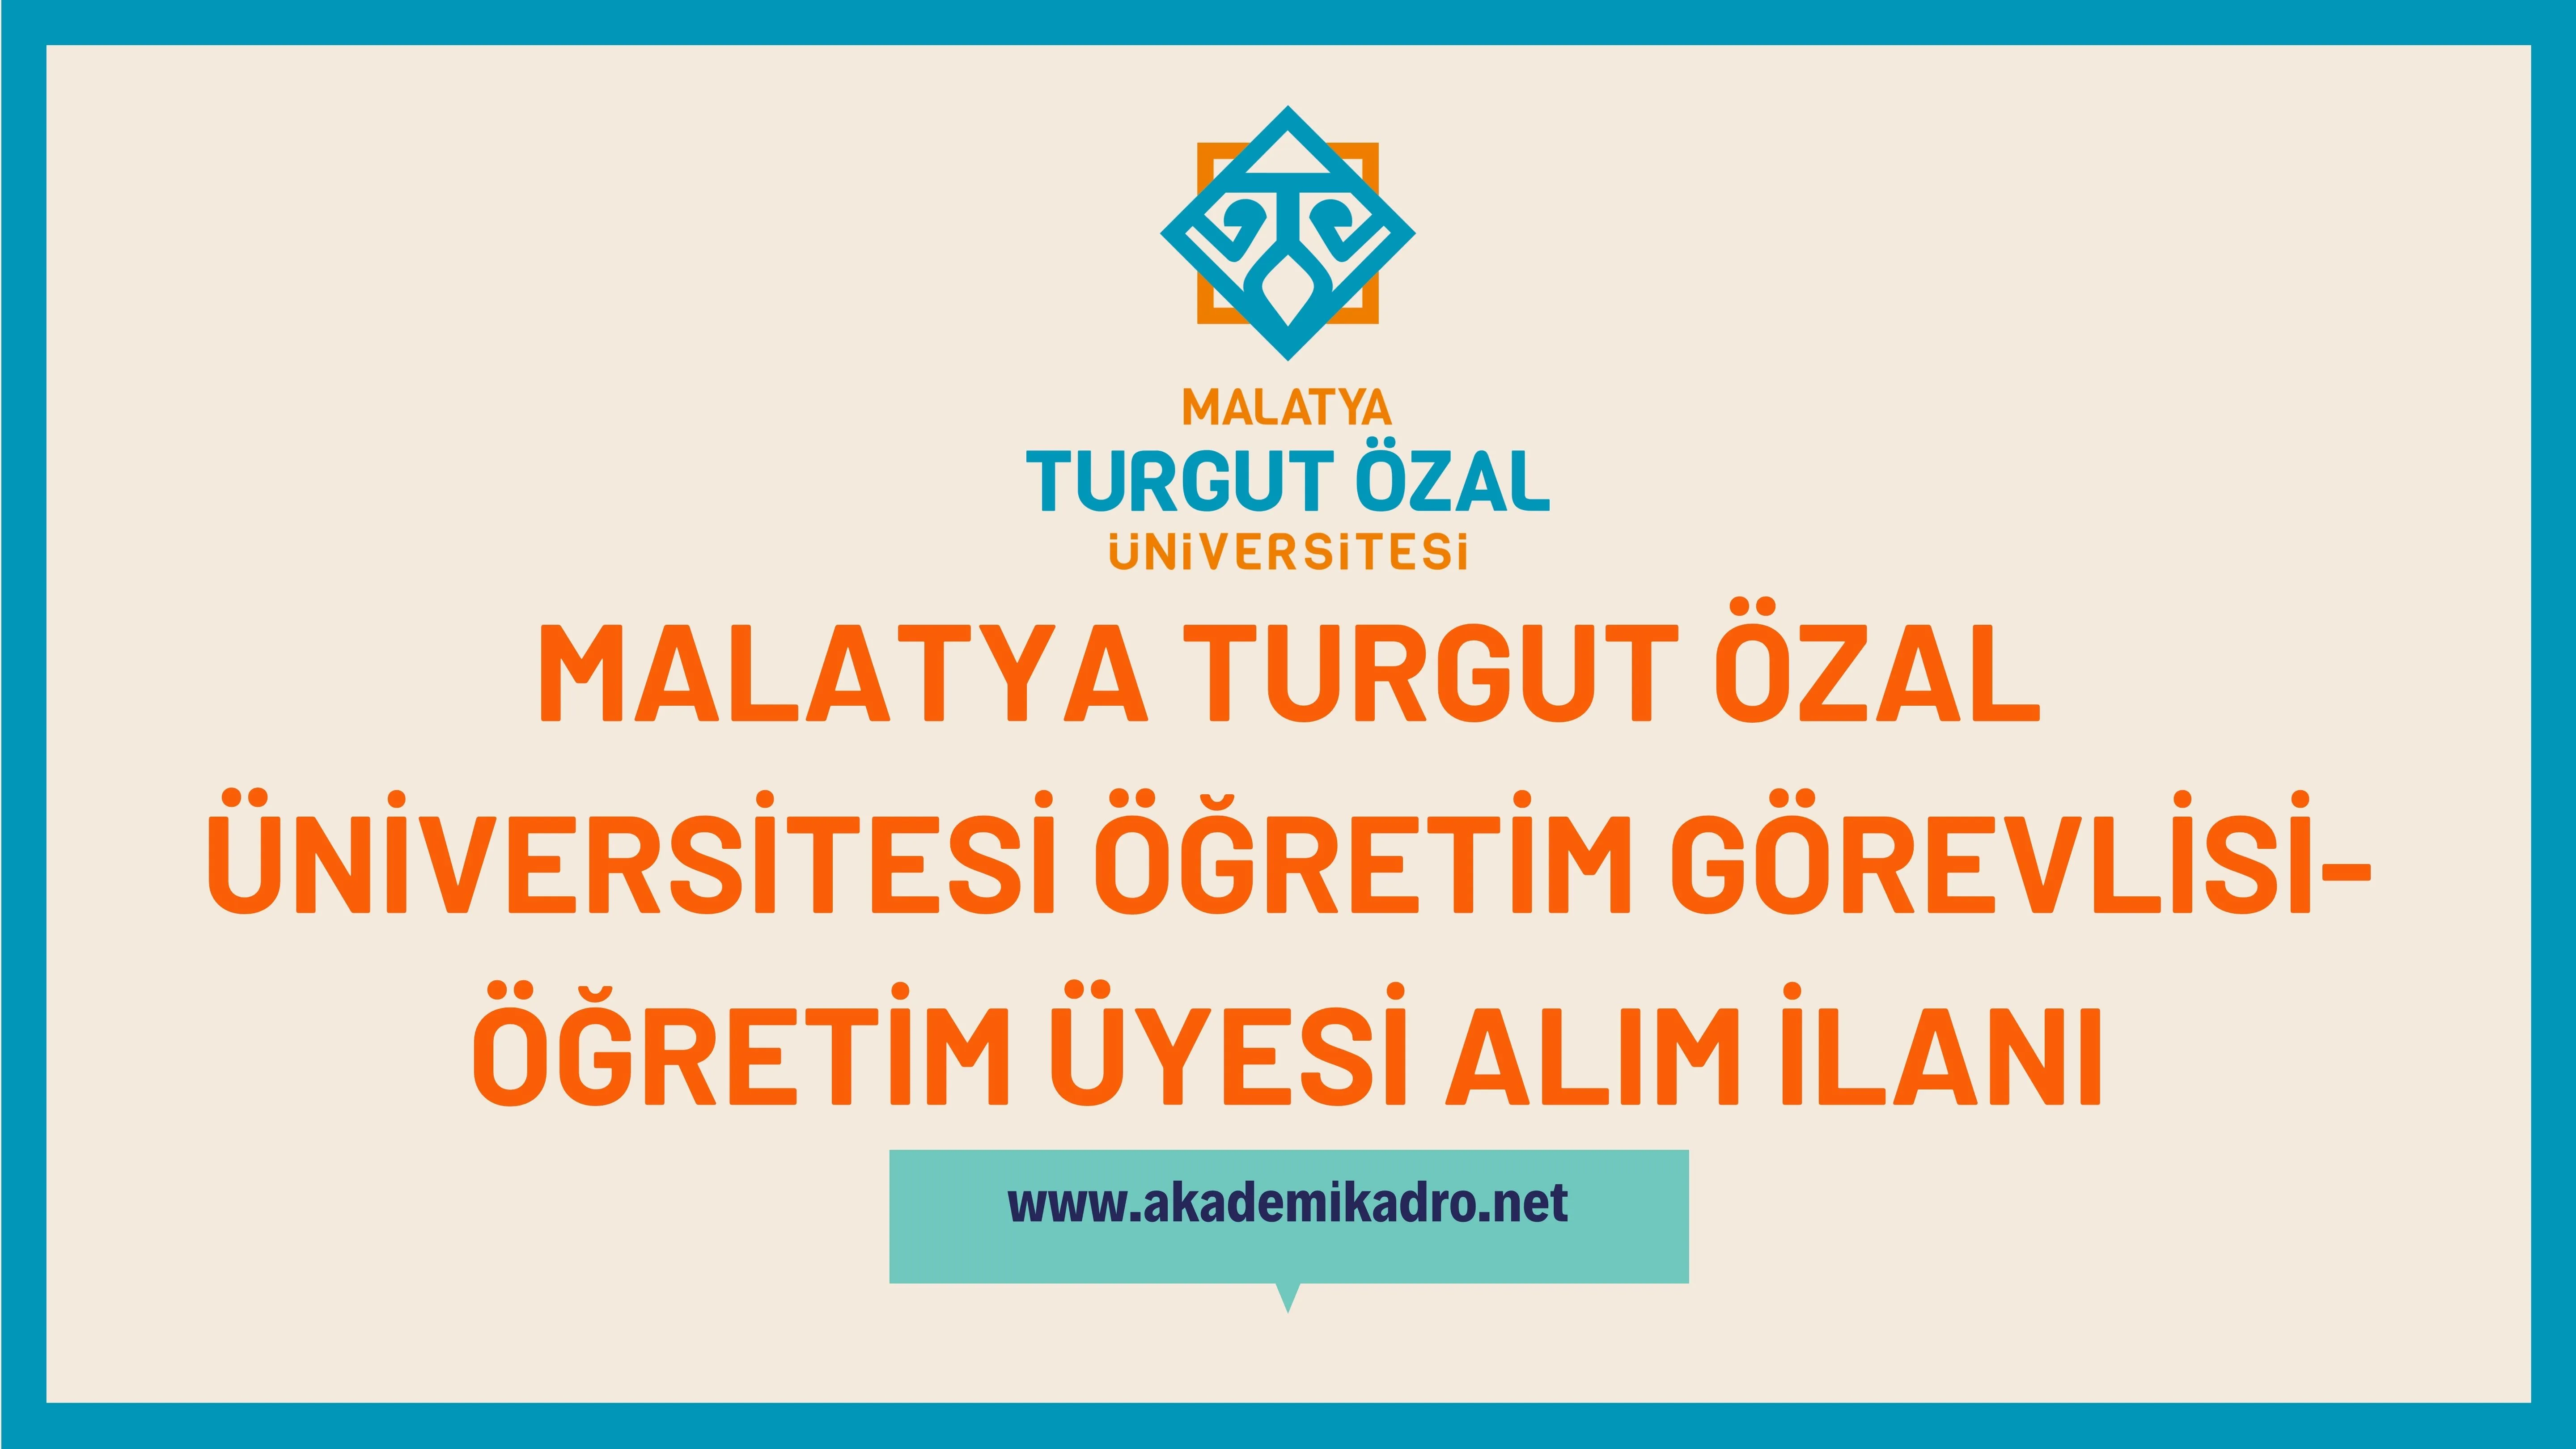 Malatya Turgut Özal Üniversitesi Öğretim görevlisi ve öğretim üyesi olmak üzere 27 Öğretim elemanı alacak.